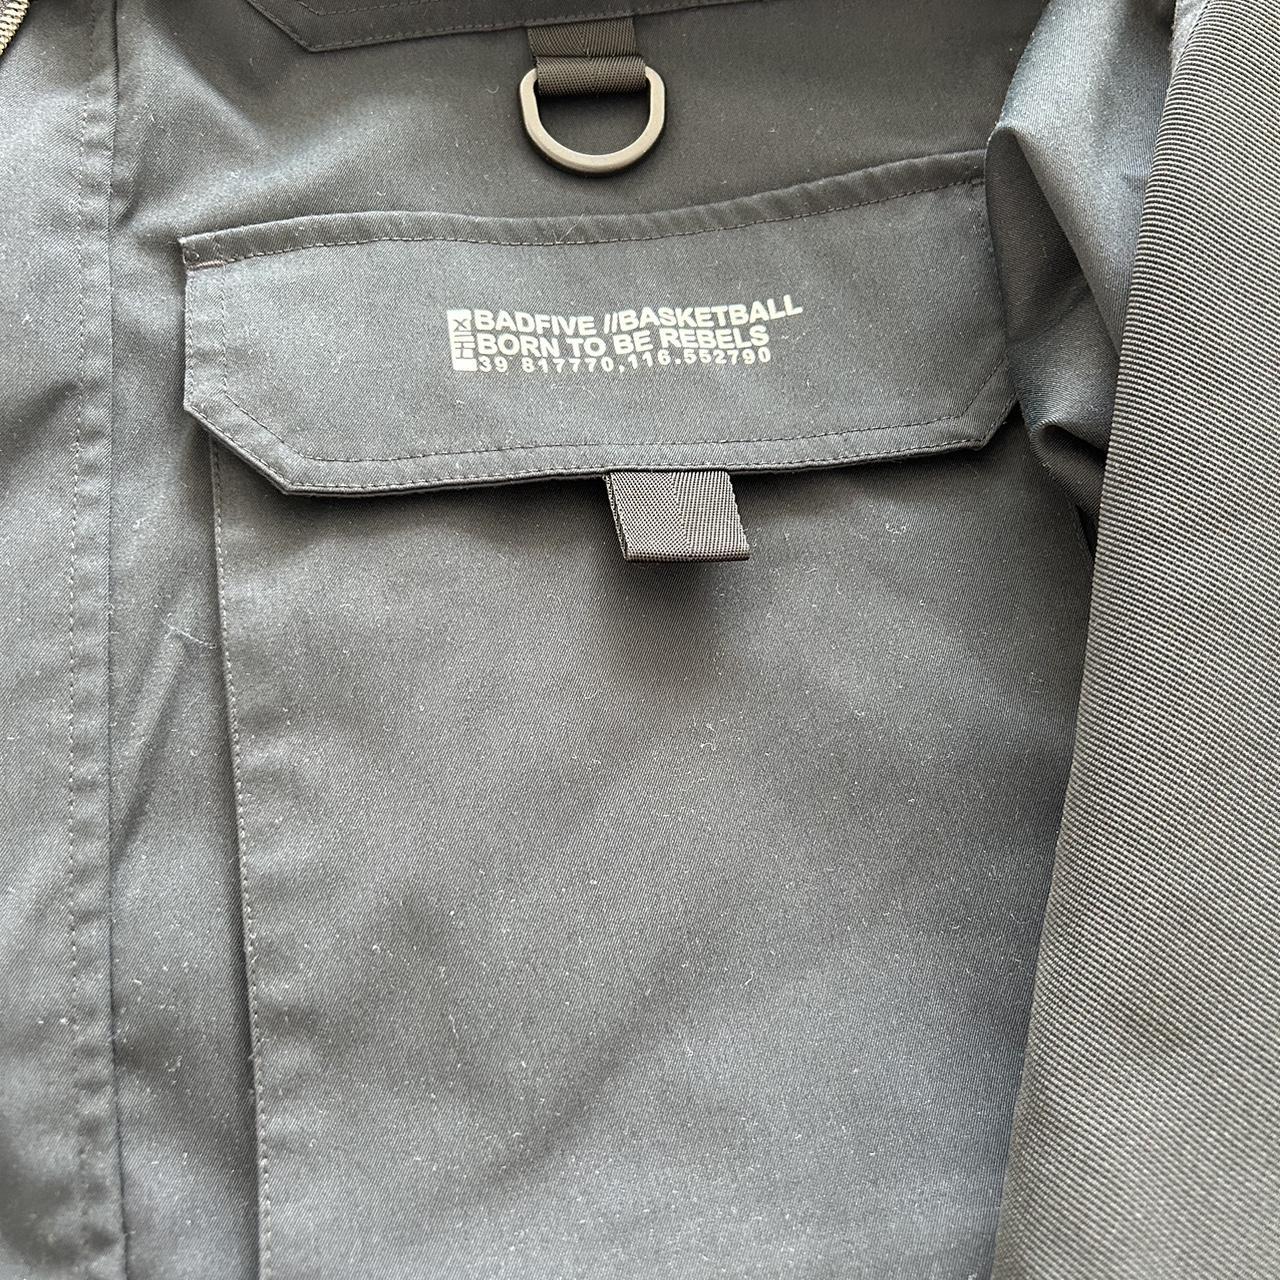 men’s badfive jacket black side zip detail size L... - Depop